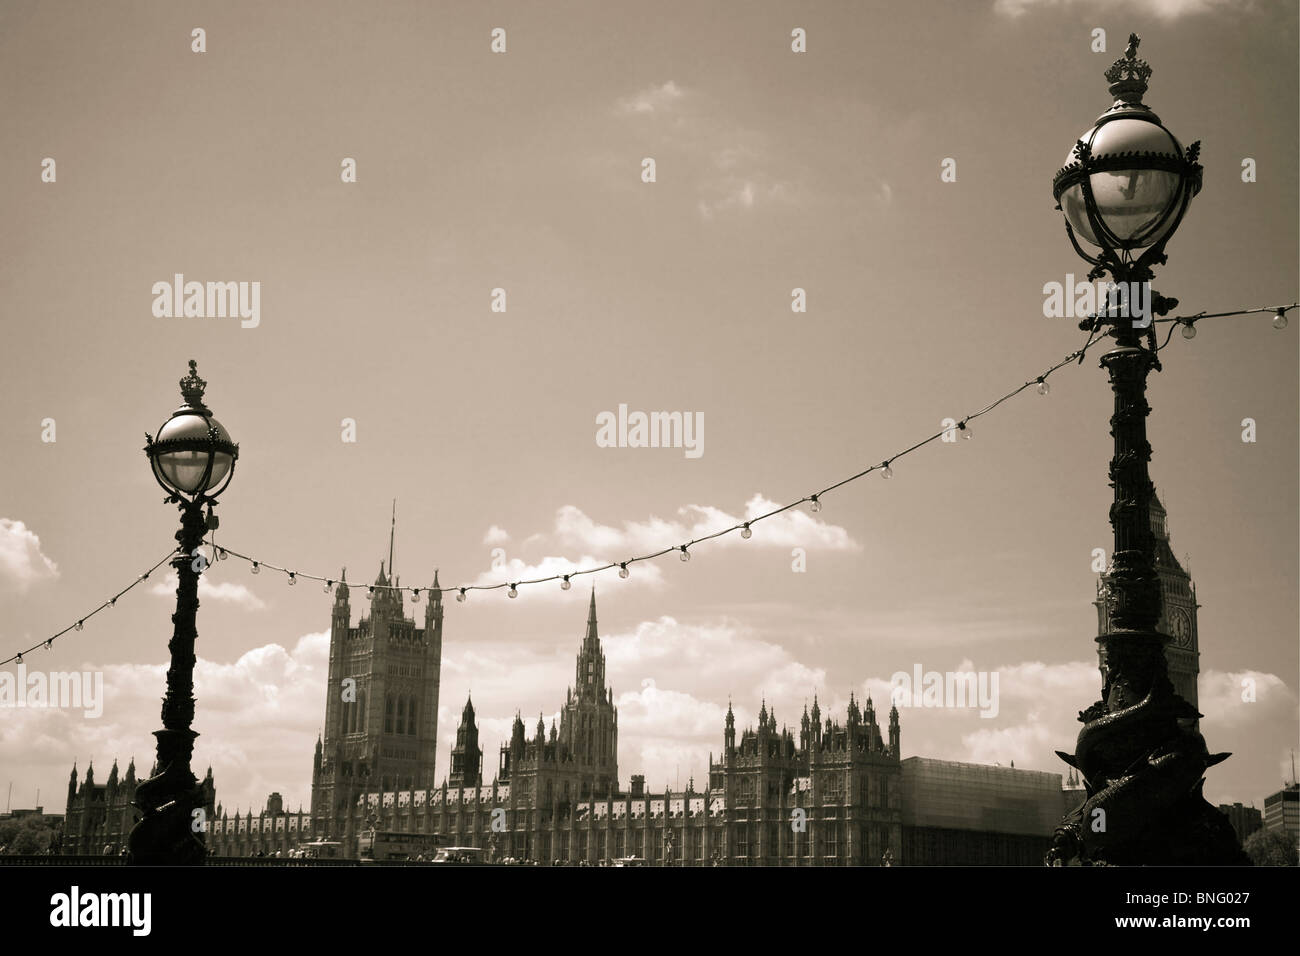 Lampadaires et maisons ornées de parlements, Londres, Angleterre. Banque D'Images